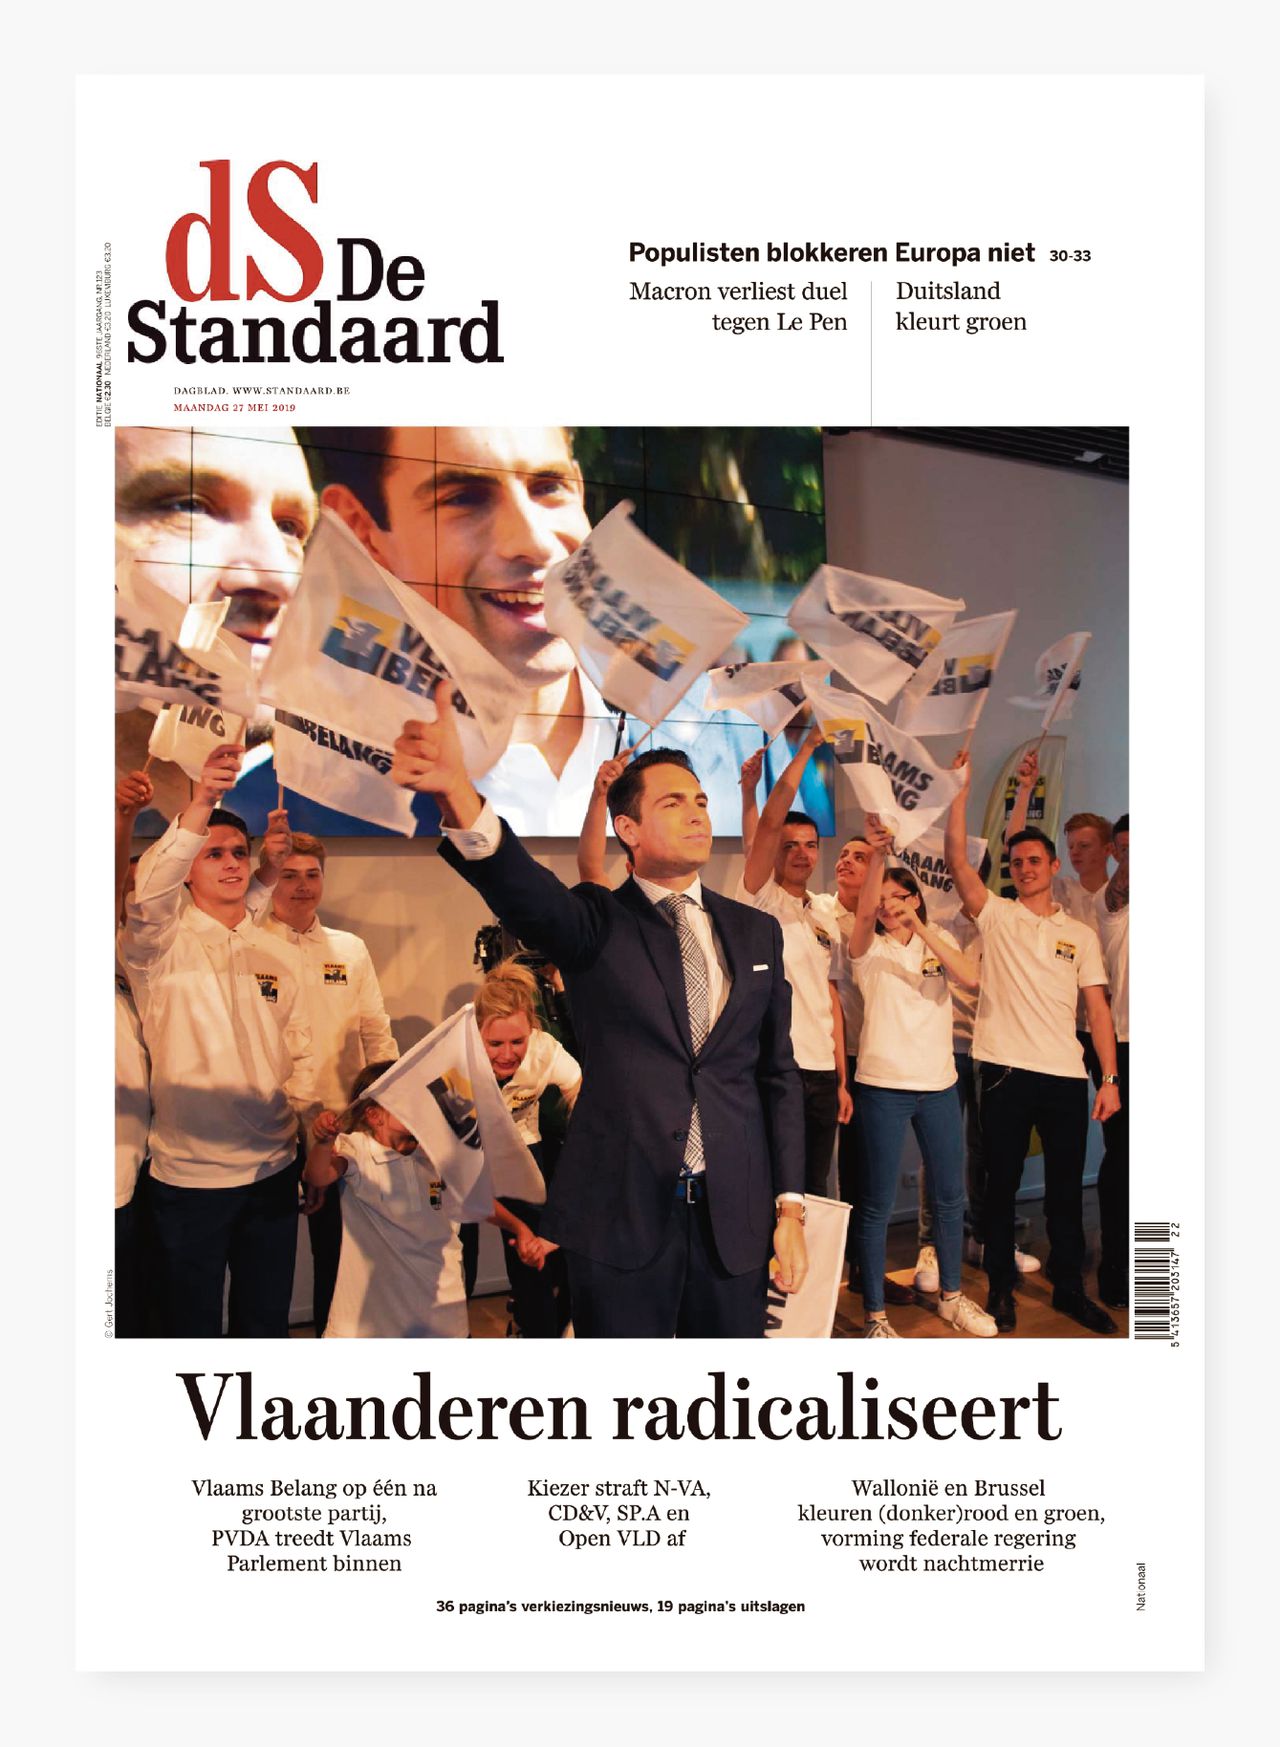 Voorpagina van de Belgische krant De Standaard op maandag.